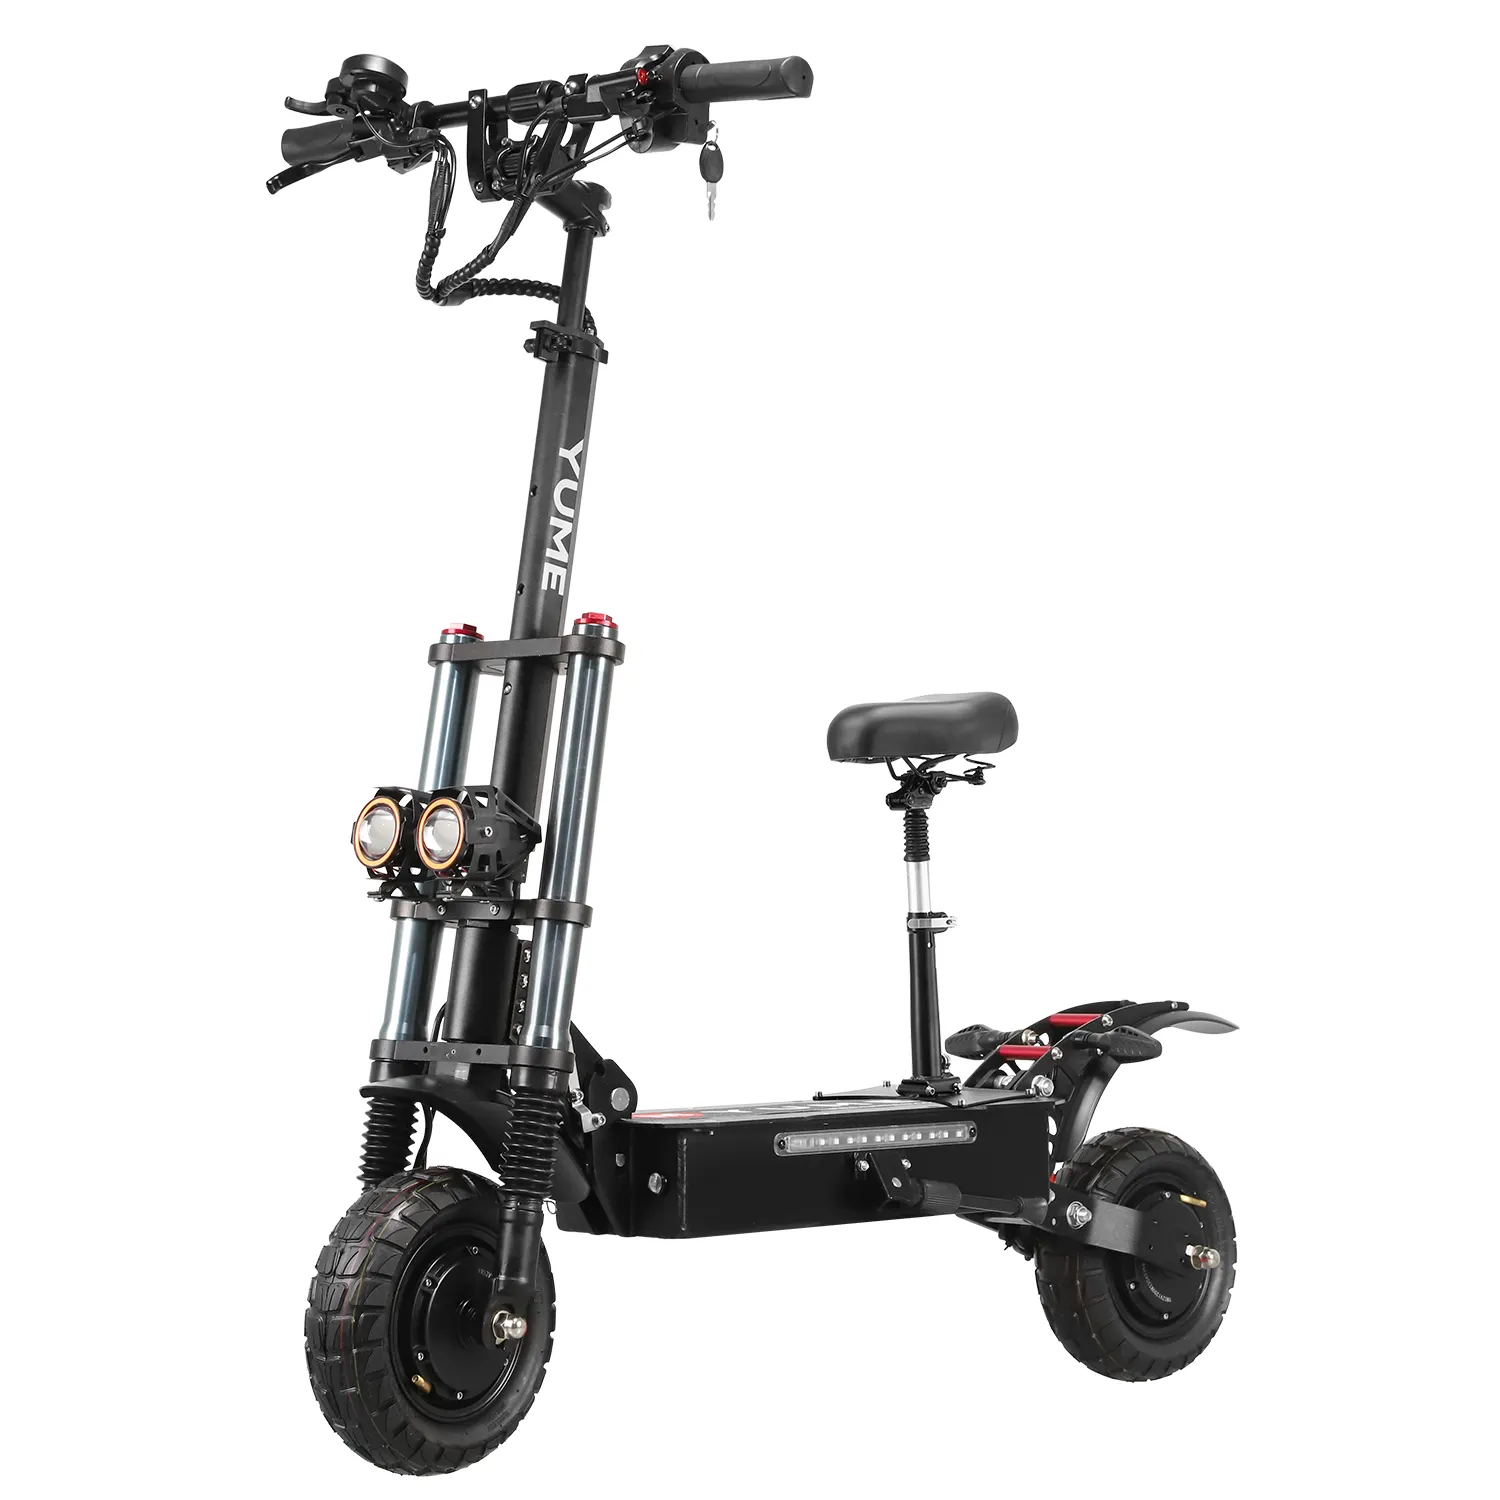 YUME Y10 fabricante chino 2400W dos ruedas scooter de movilidad soporte para adultos dropshipping almacén de EE. UU.